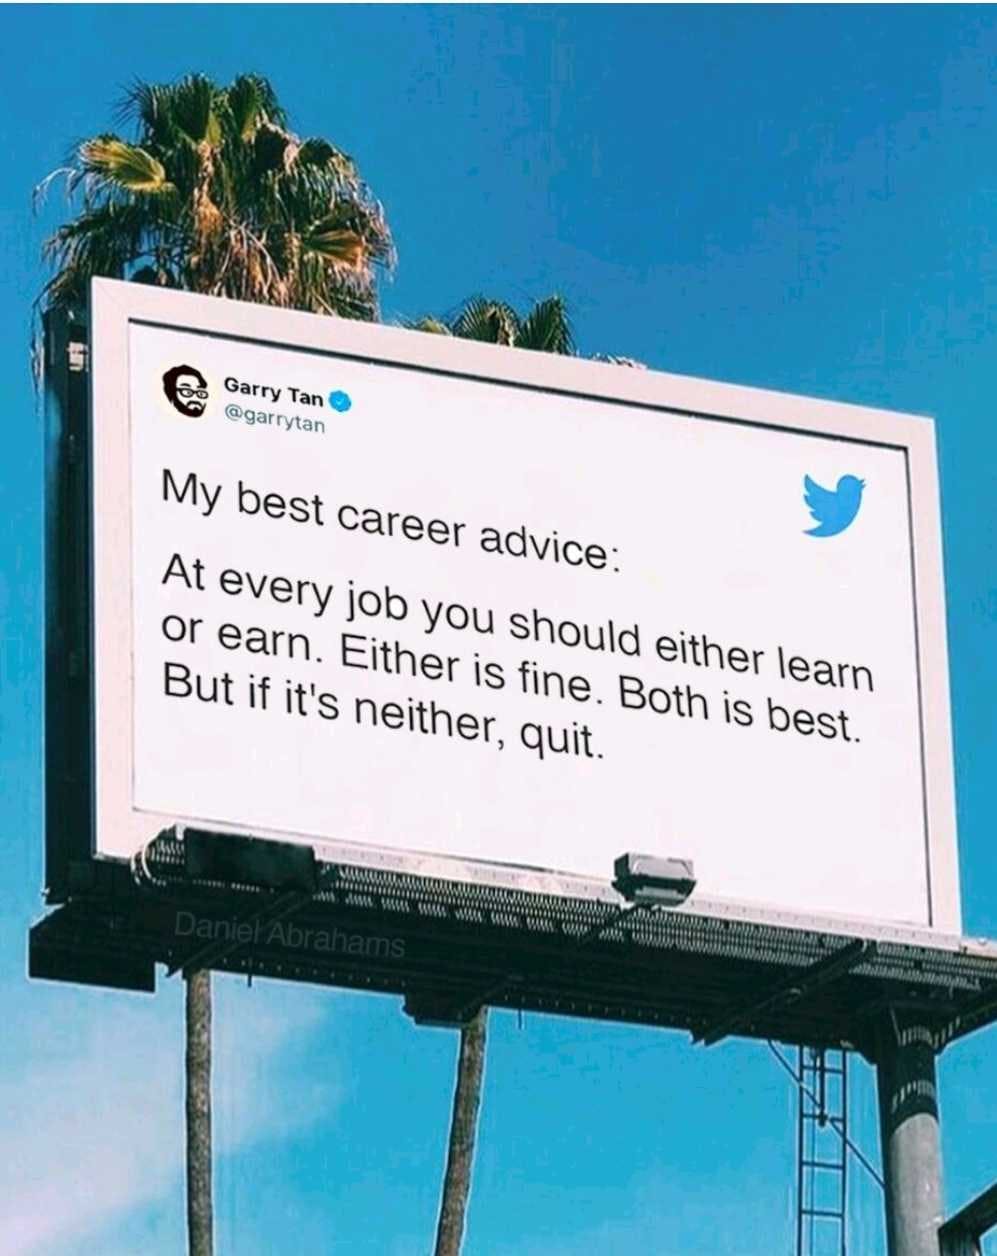 career advice to earn or learn